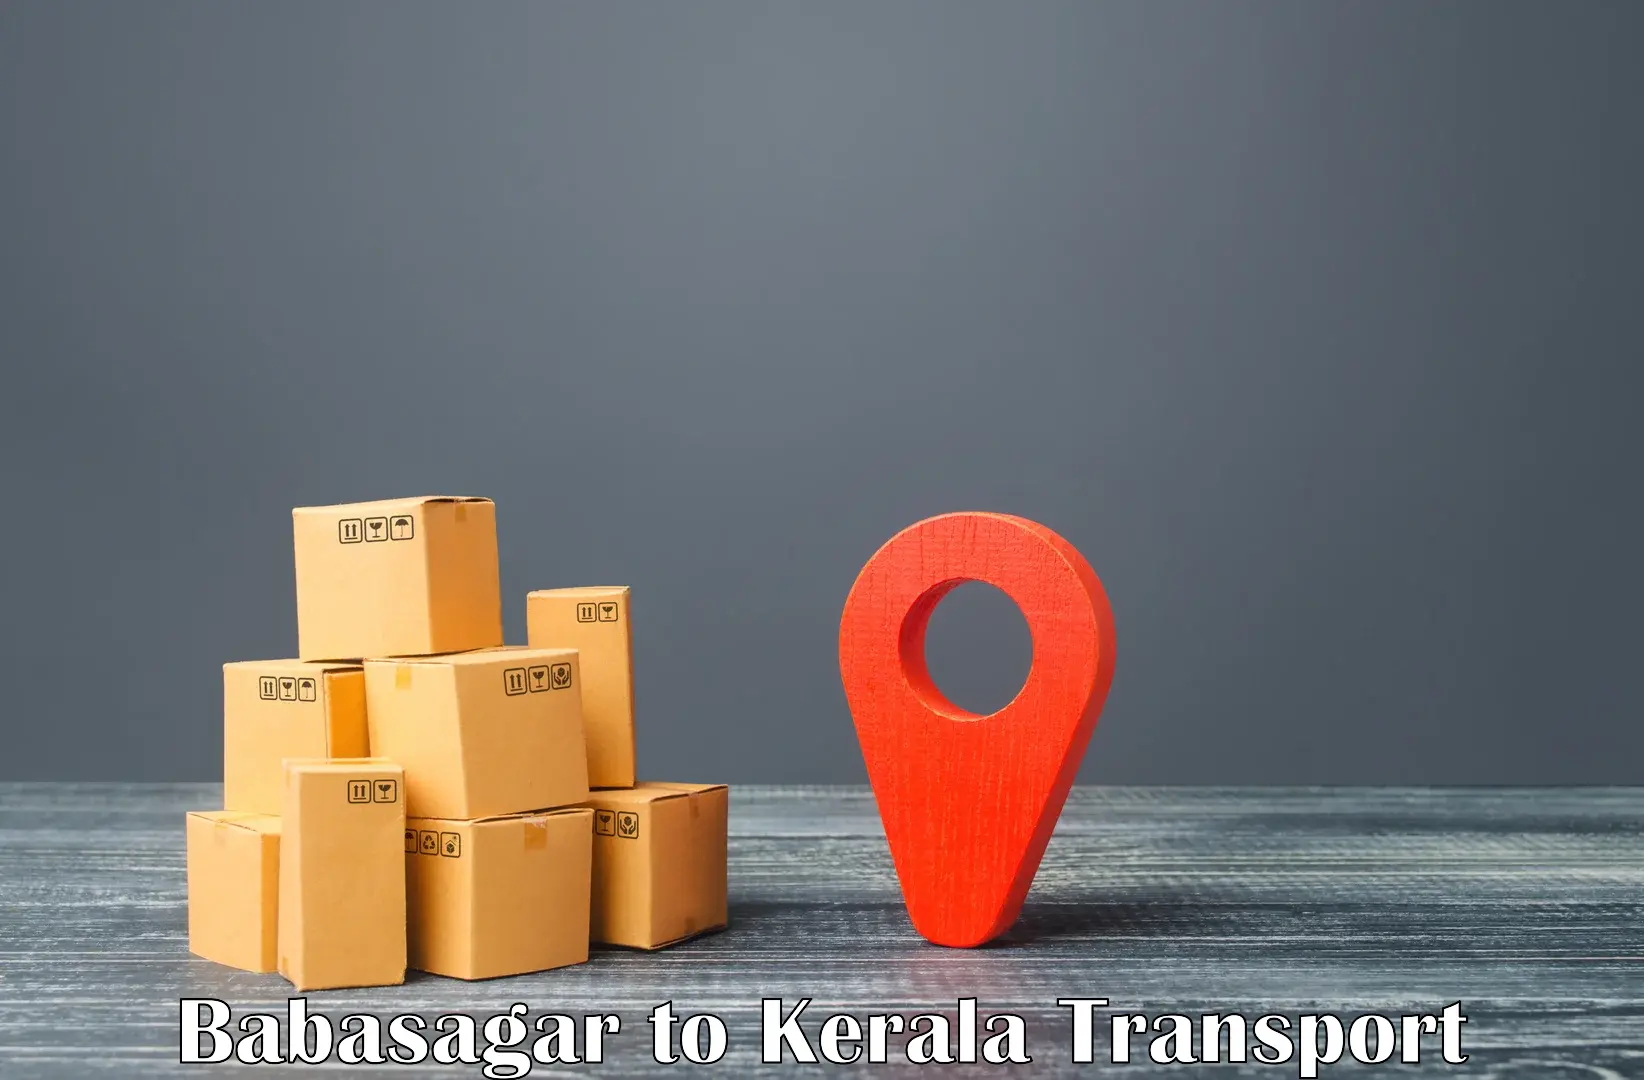 Furniture transport service Babasagar to Kottayam